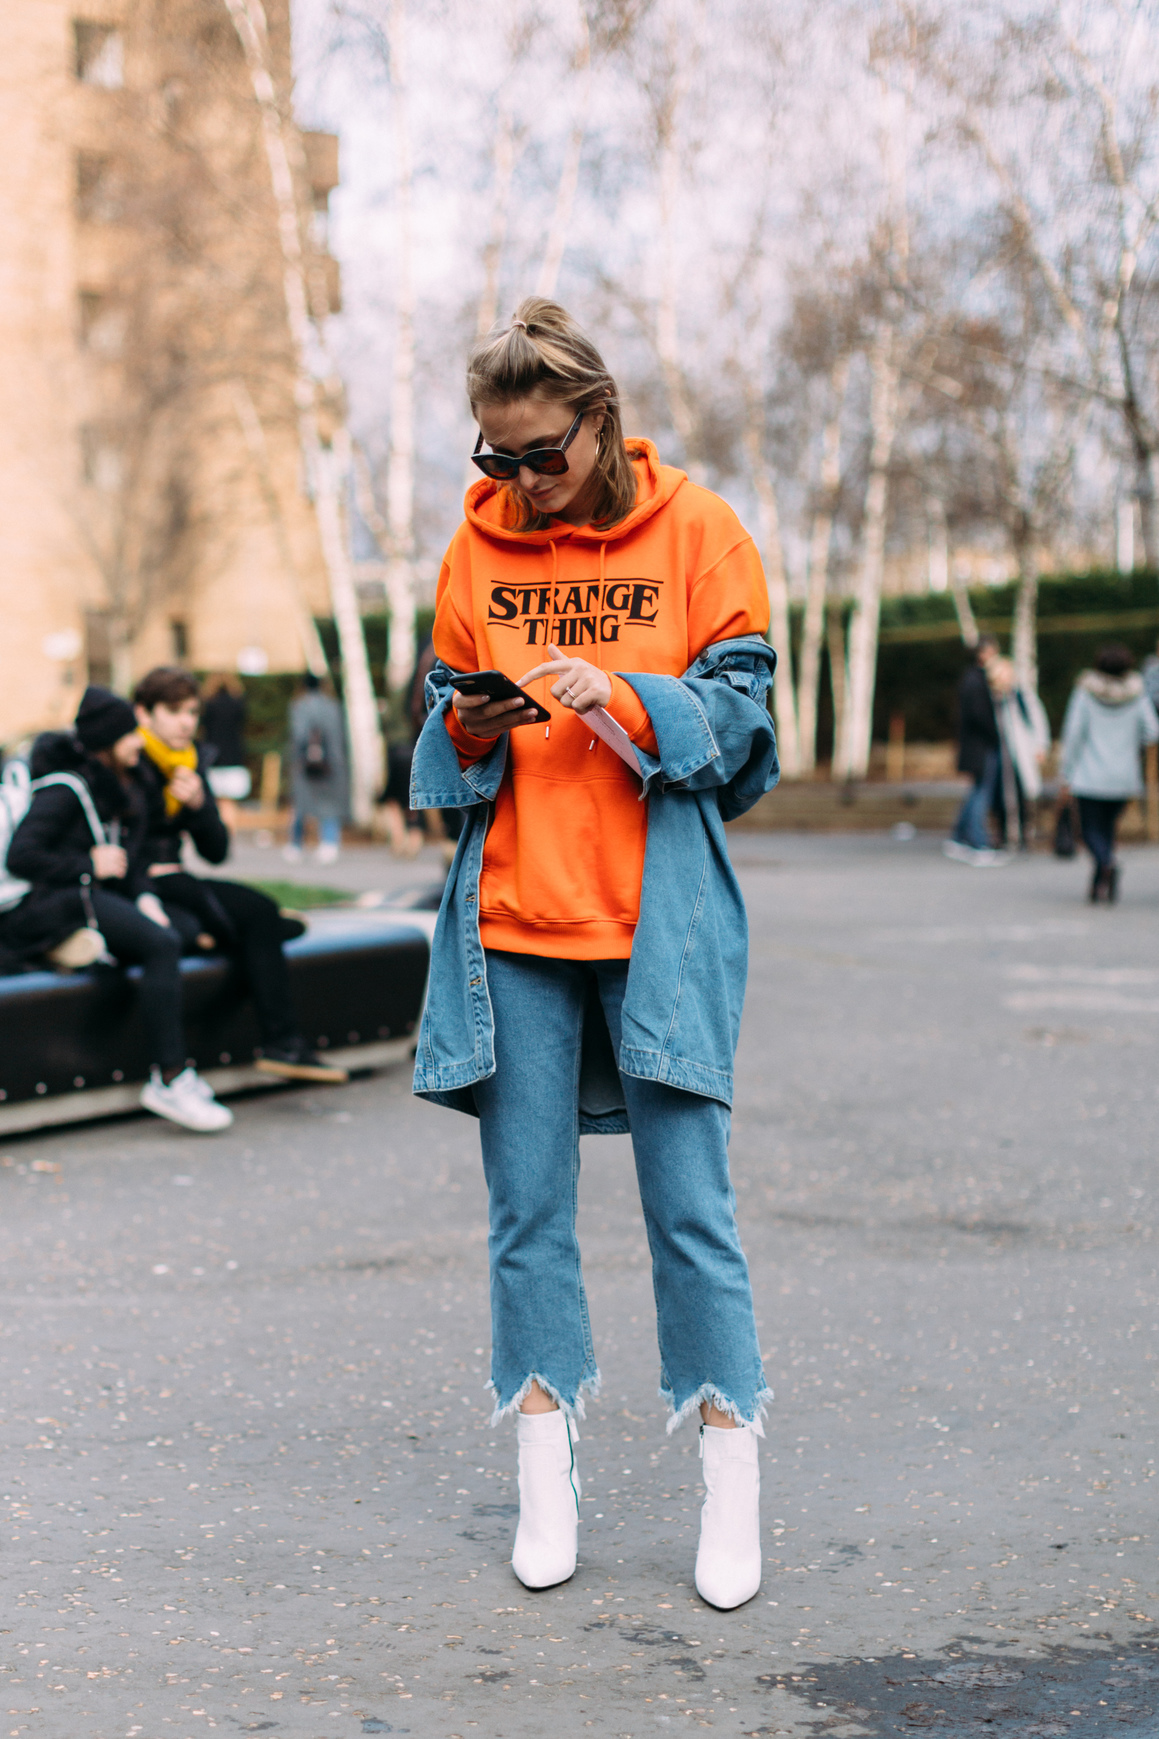 Τo styling tip για να φοράς φέτος το jean μπουφάν σου είναι πολύ πιο απλό από όσο φαντάζεσαι